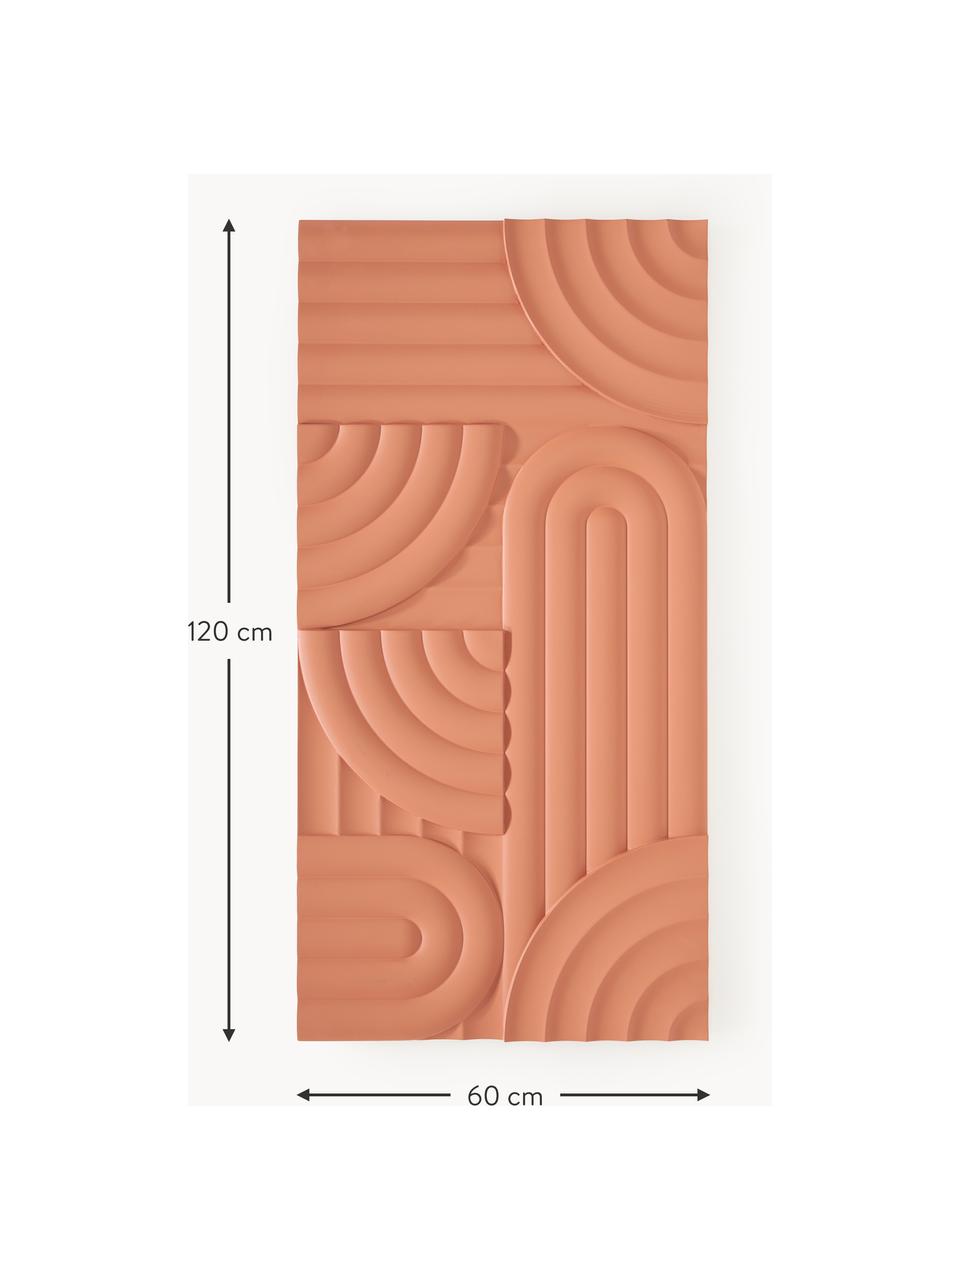 Nástěnná dekorace Massimo, Dřevovláknitá deska střední hustoty (MDF), Terakotová, Š 120 cm, V 60 cm